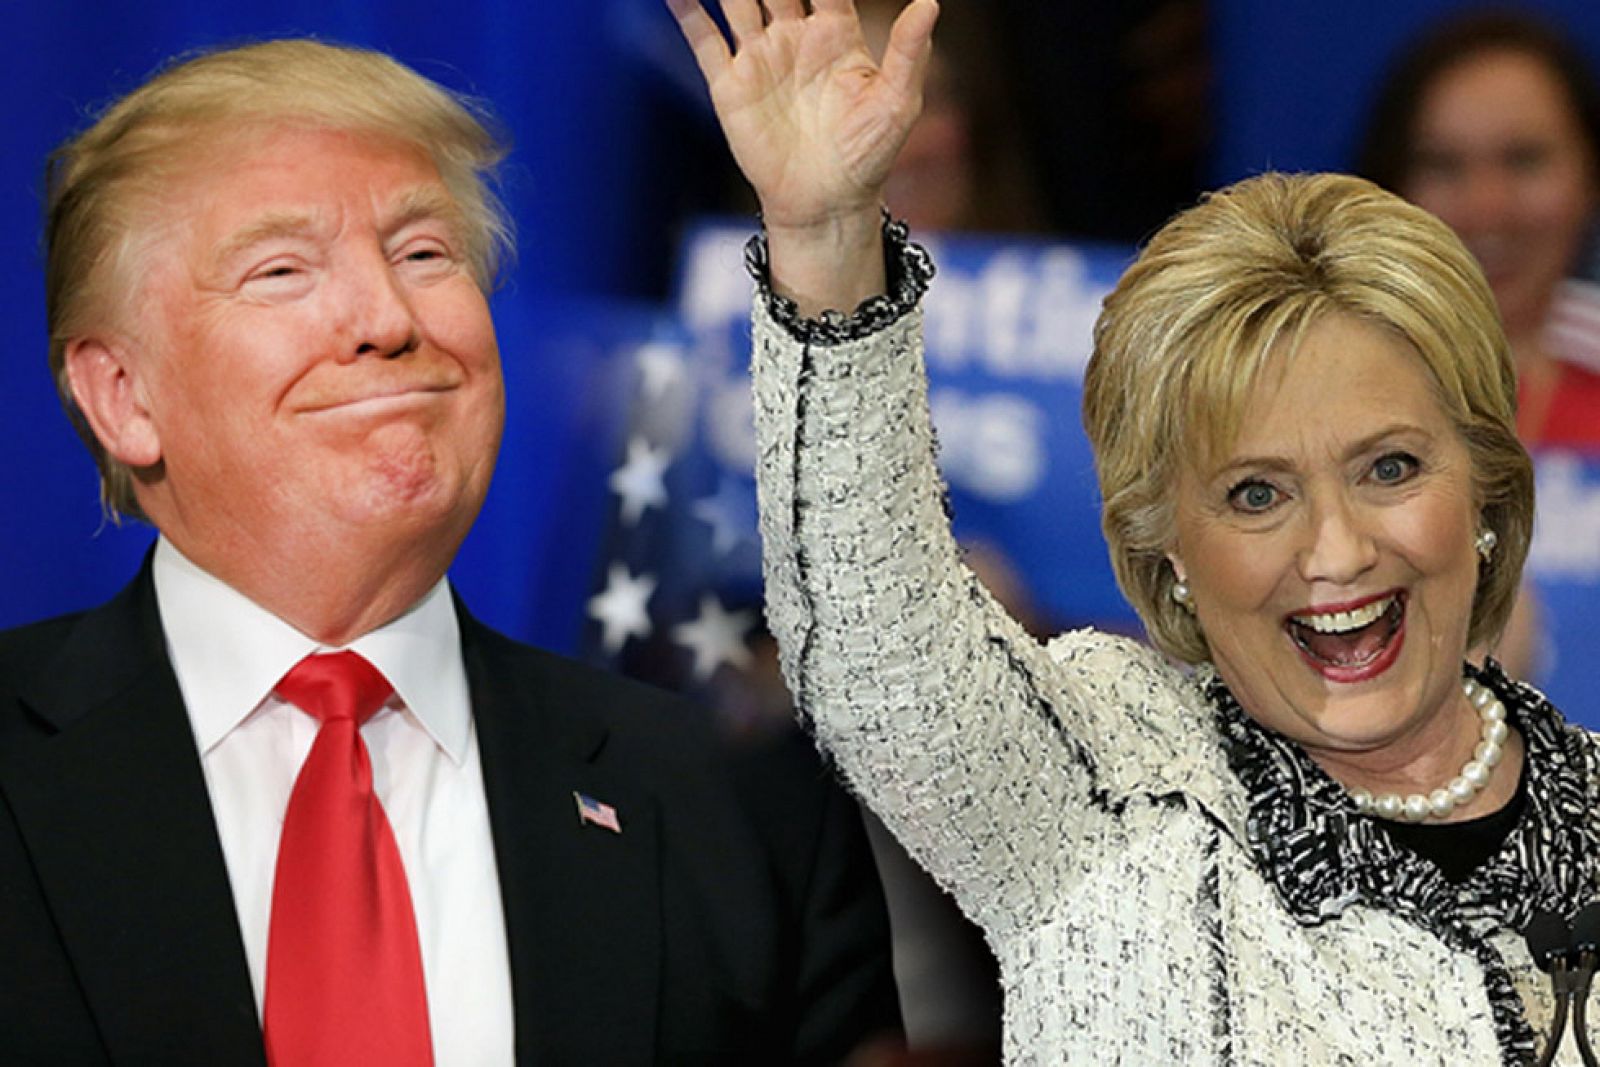 El Debat de La 1 - Les eleccions presidencials als Estats Units - Avanç